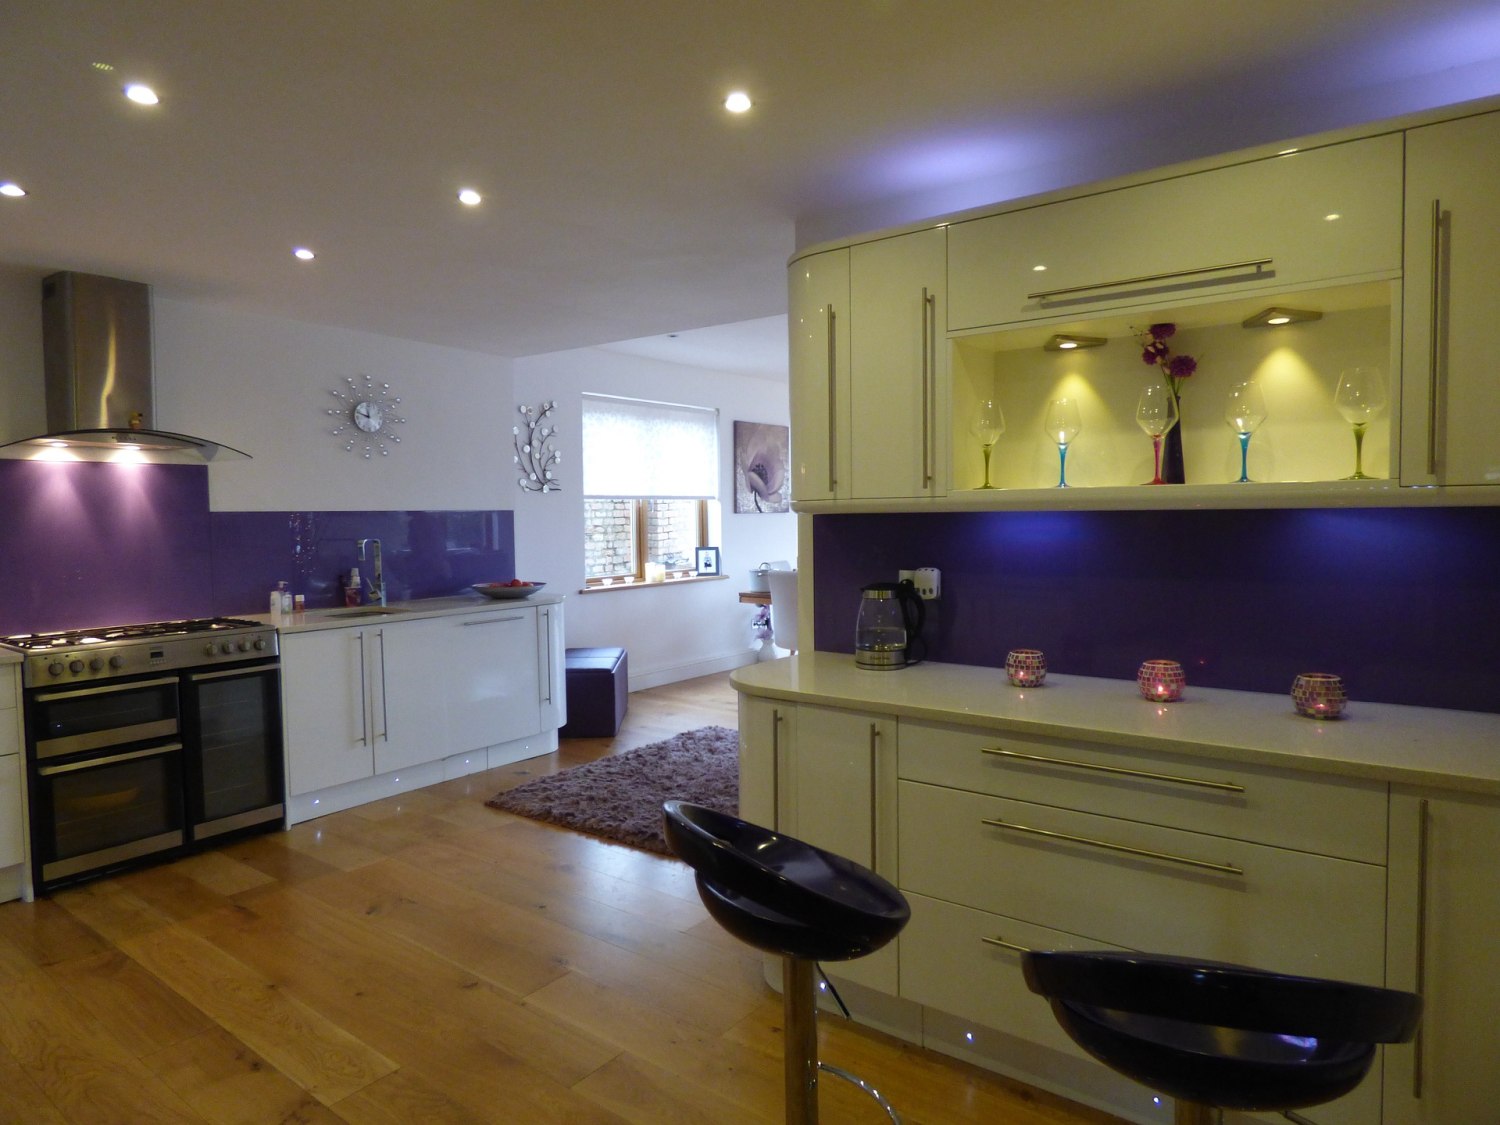 fiolet w kuchni, fioletowe szkło w kuchni, fioletowe płytki nad blatem w kuchni